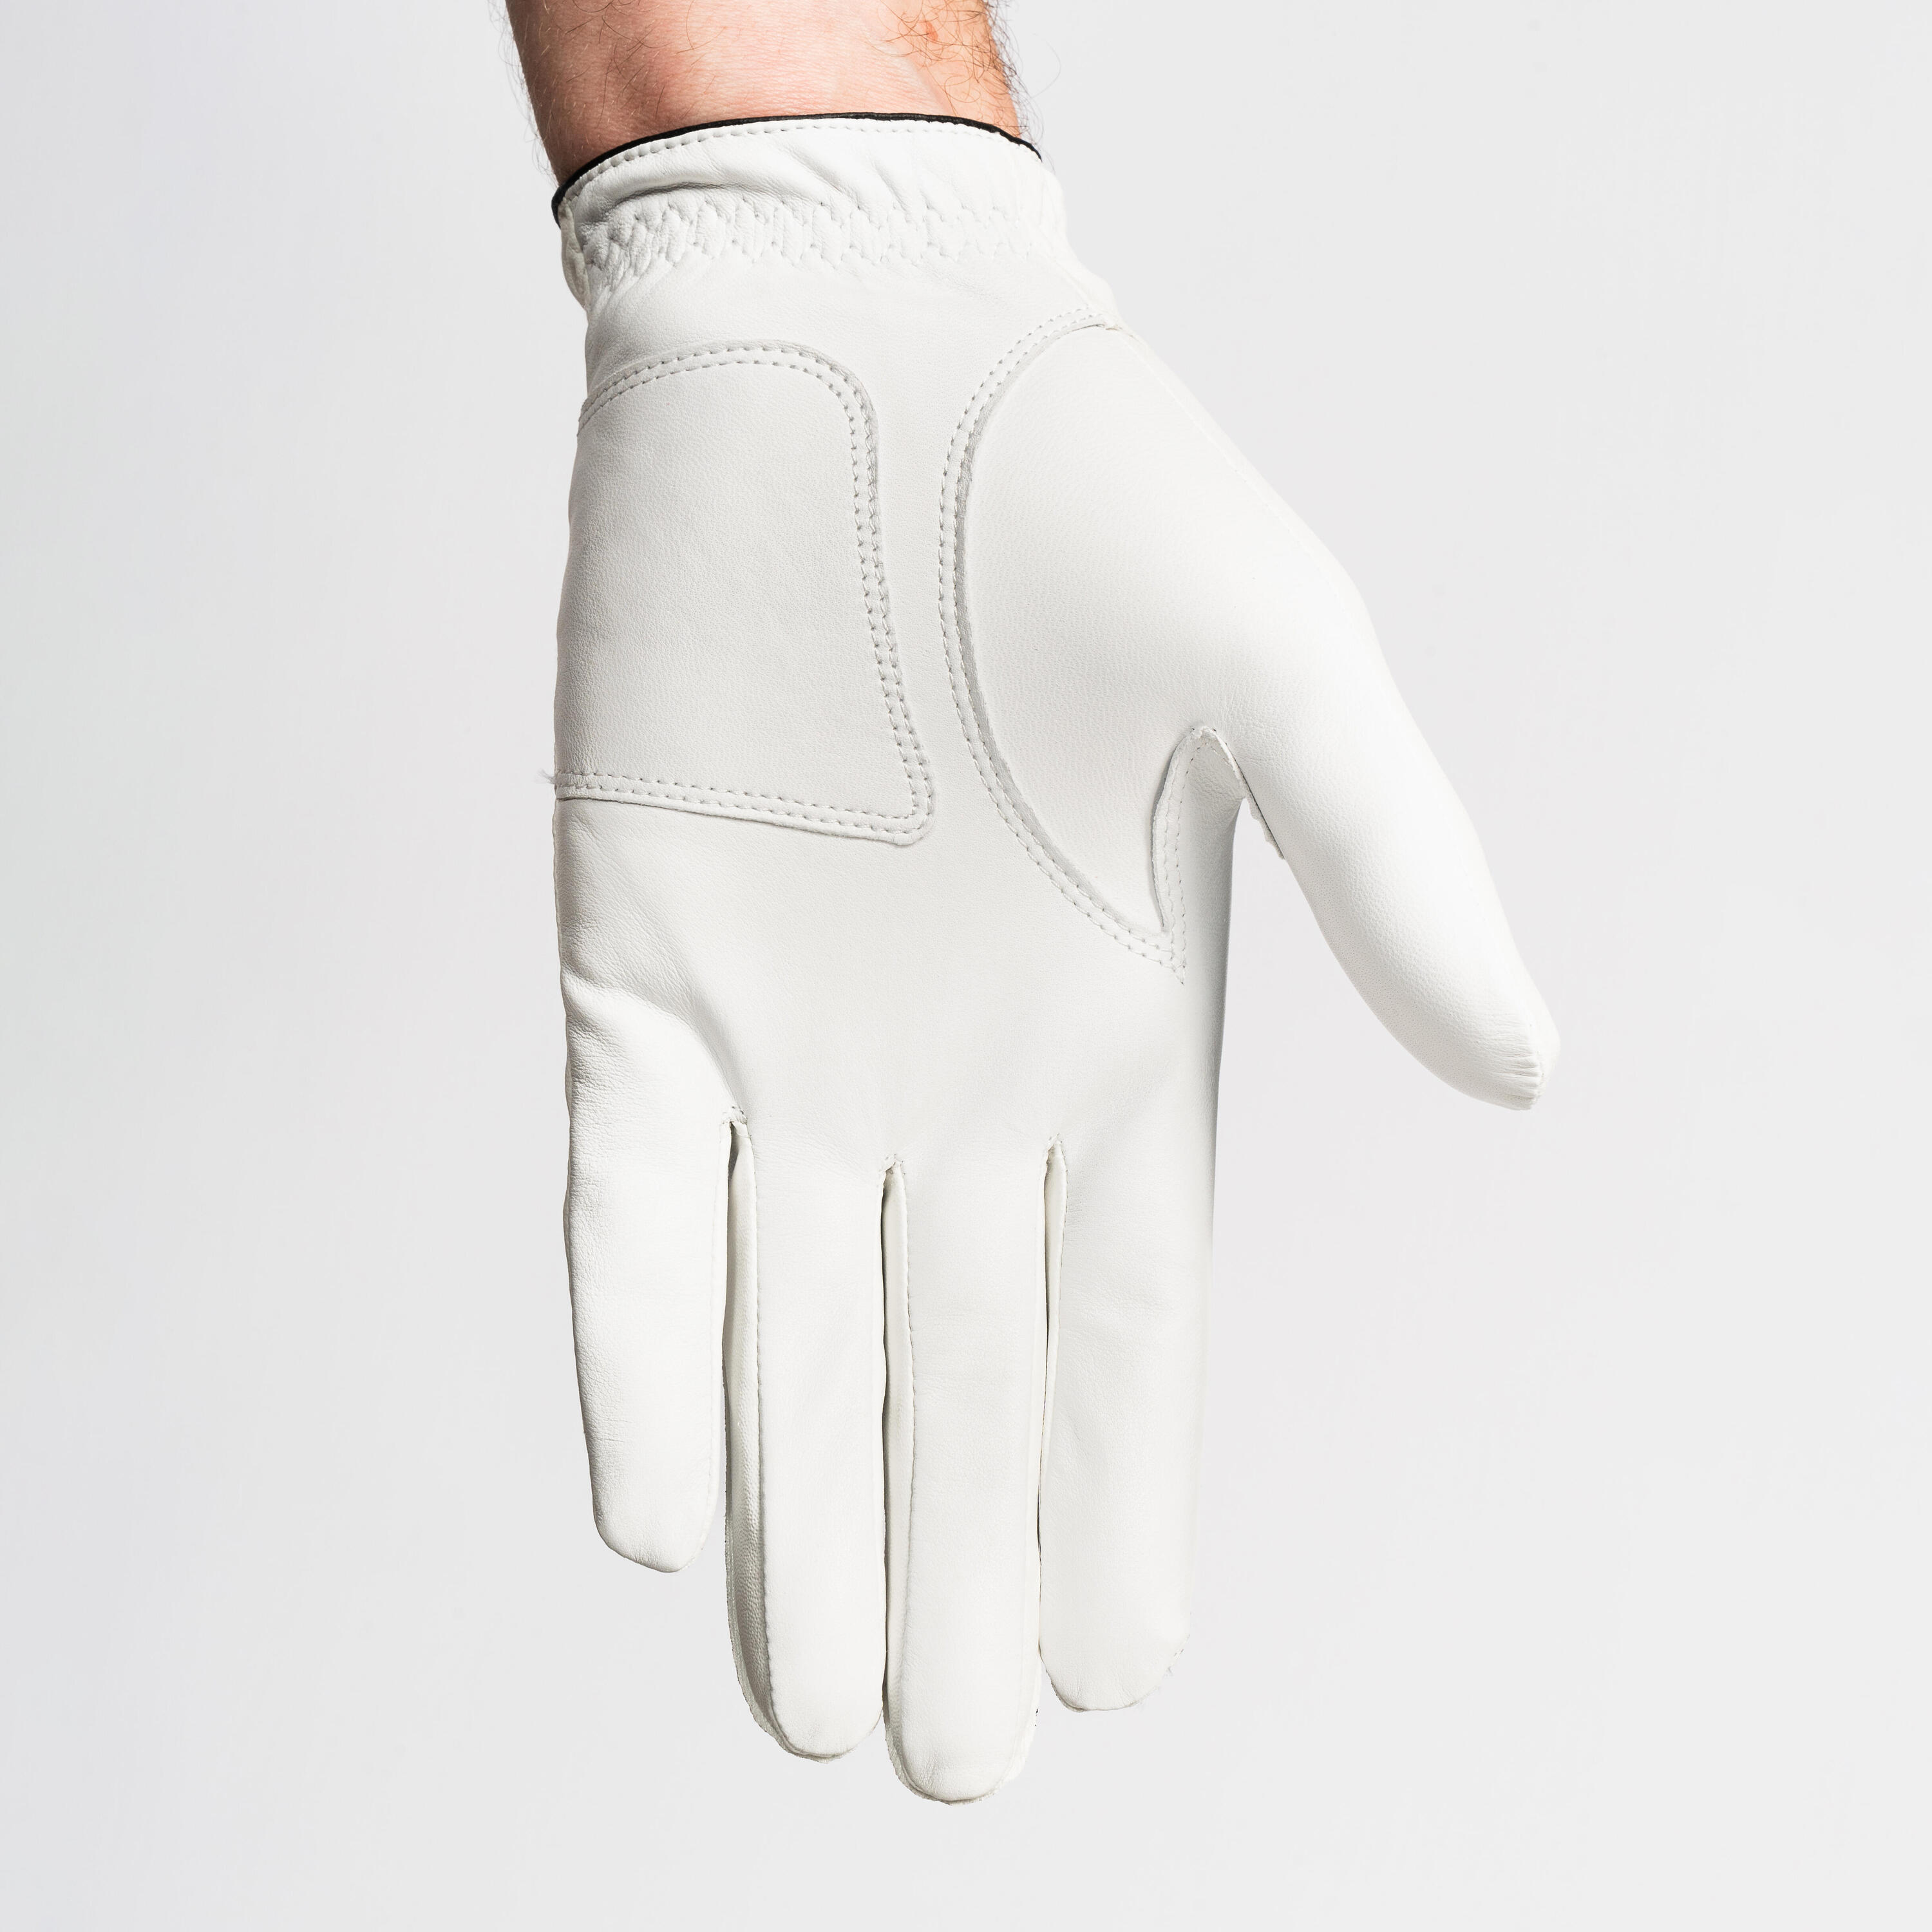 Men's golf glove right handed - 500 white 2/5